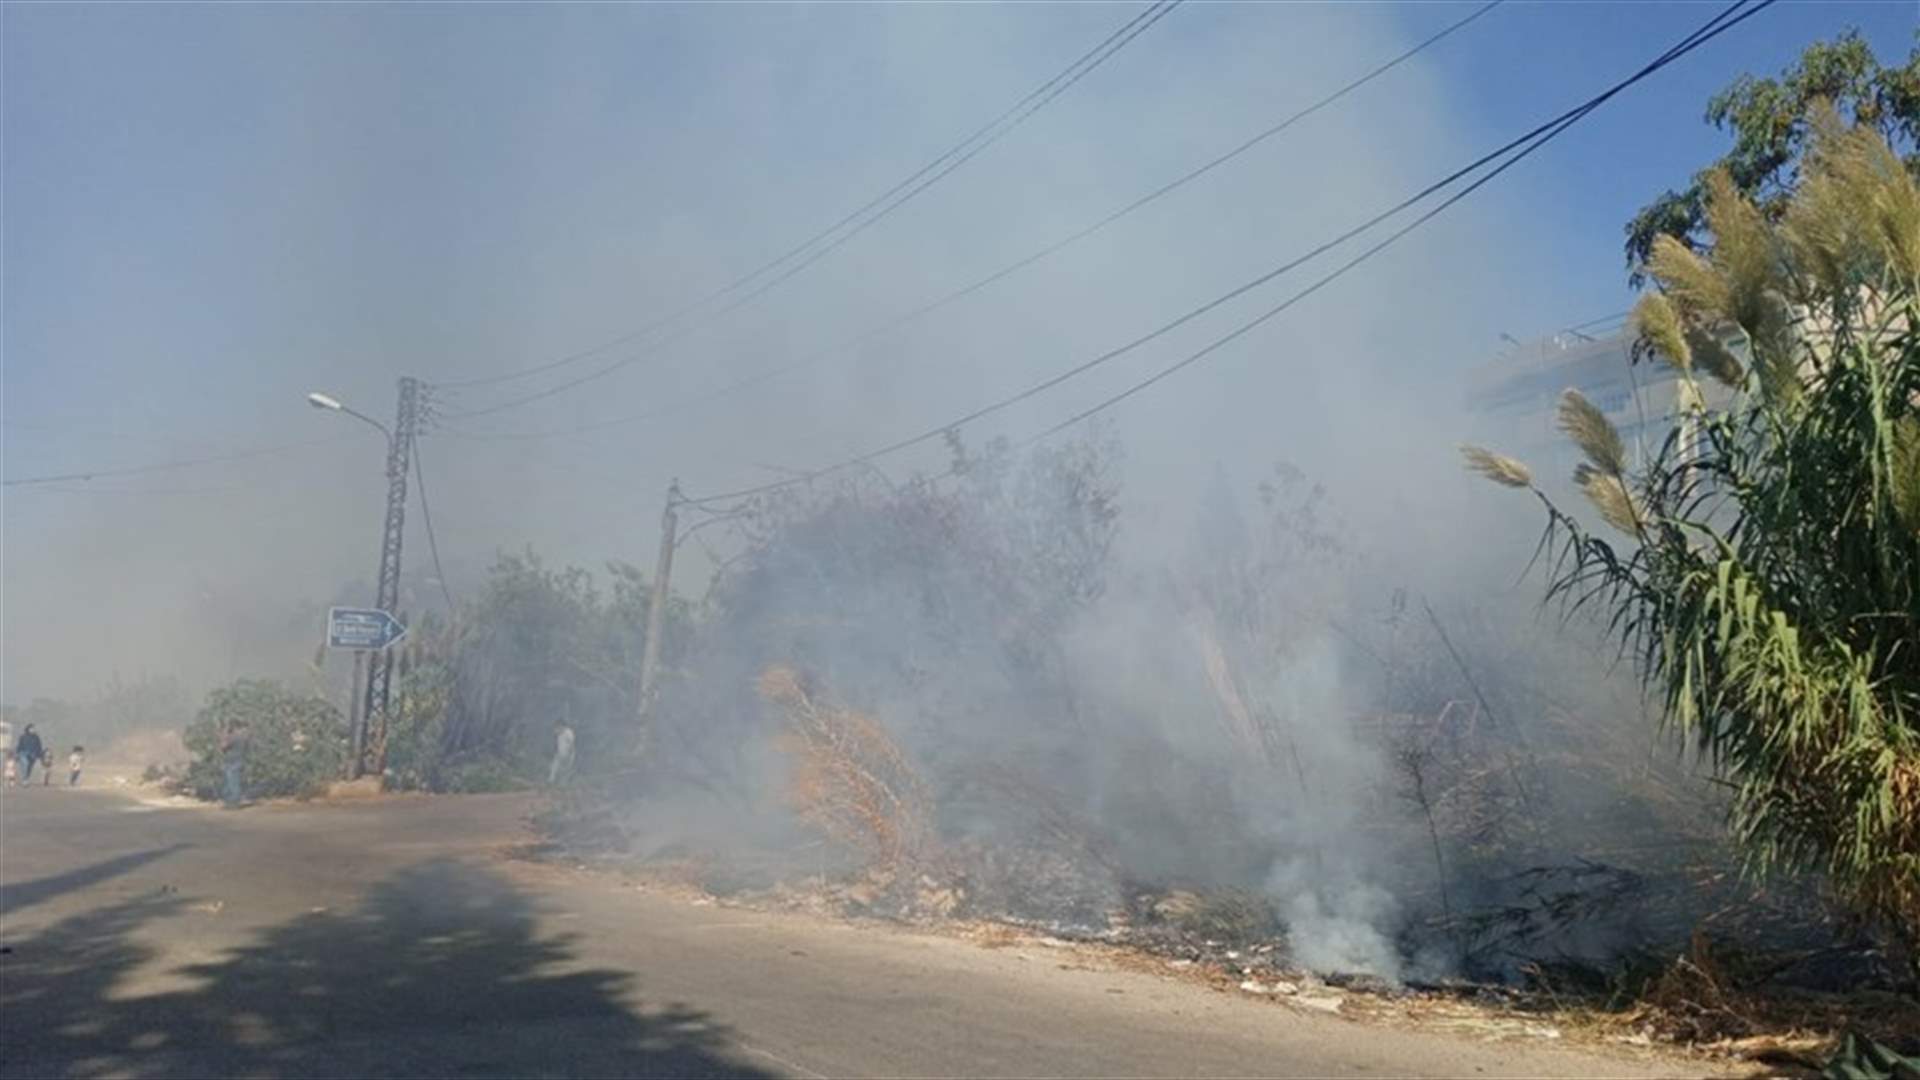 حريق كبير في الأحراج على الطريق الممتد من دوار الملعب البلدي حتى جامعة العزم في طرابلس وتخوف من إمتداد النيران إلى المنازل المجاورة